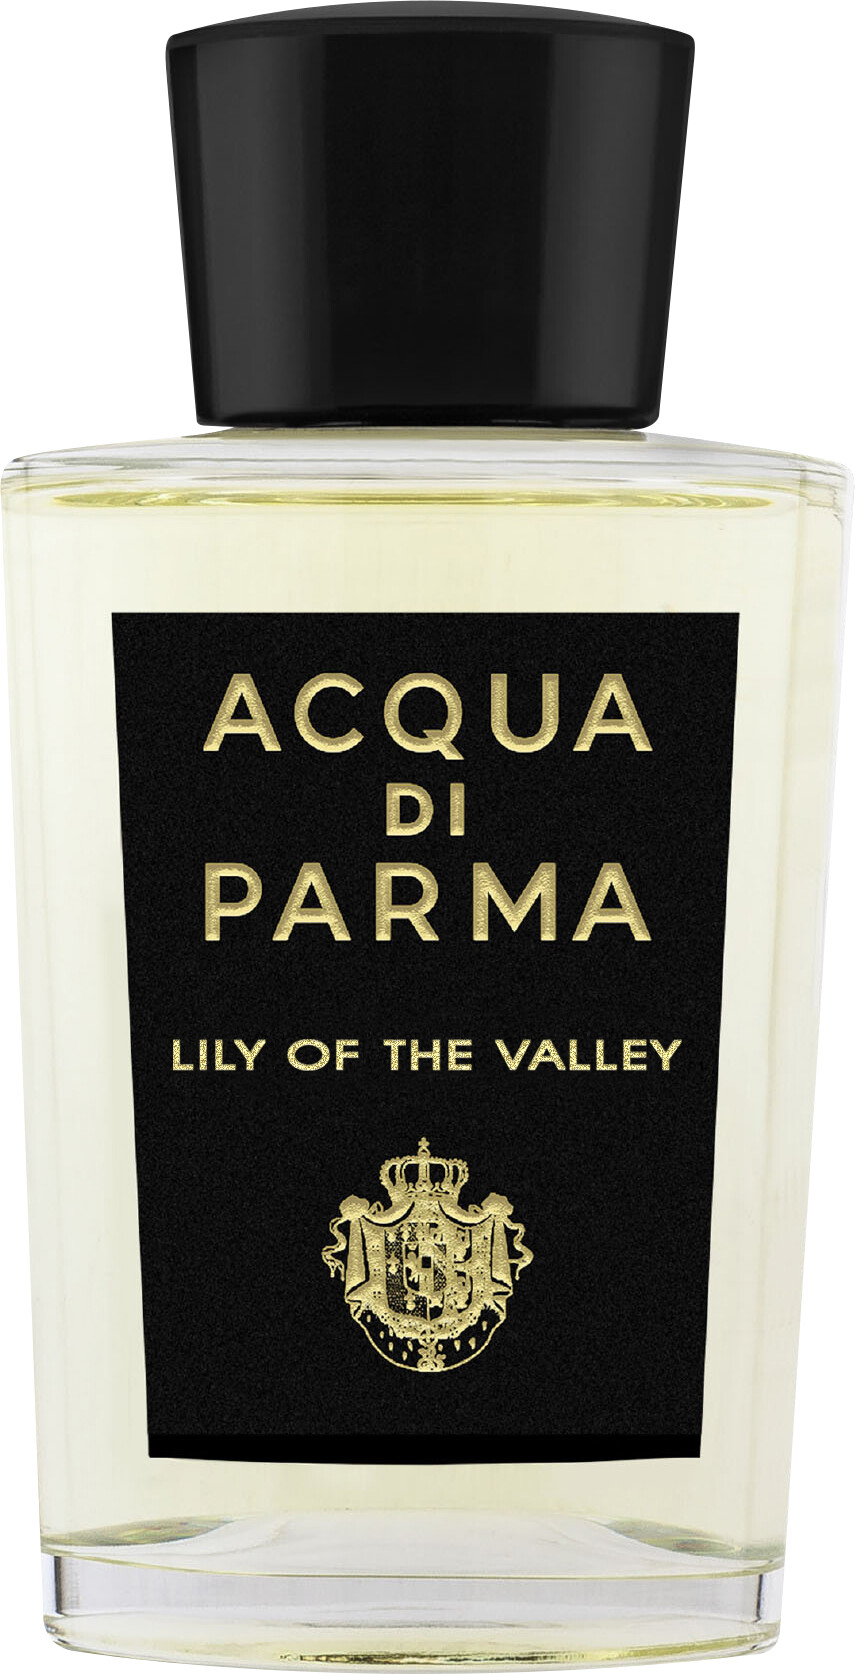 Acqua di Parma Lily of the Valley Eau de Parfum Spray 100ml